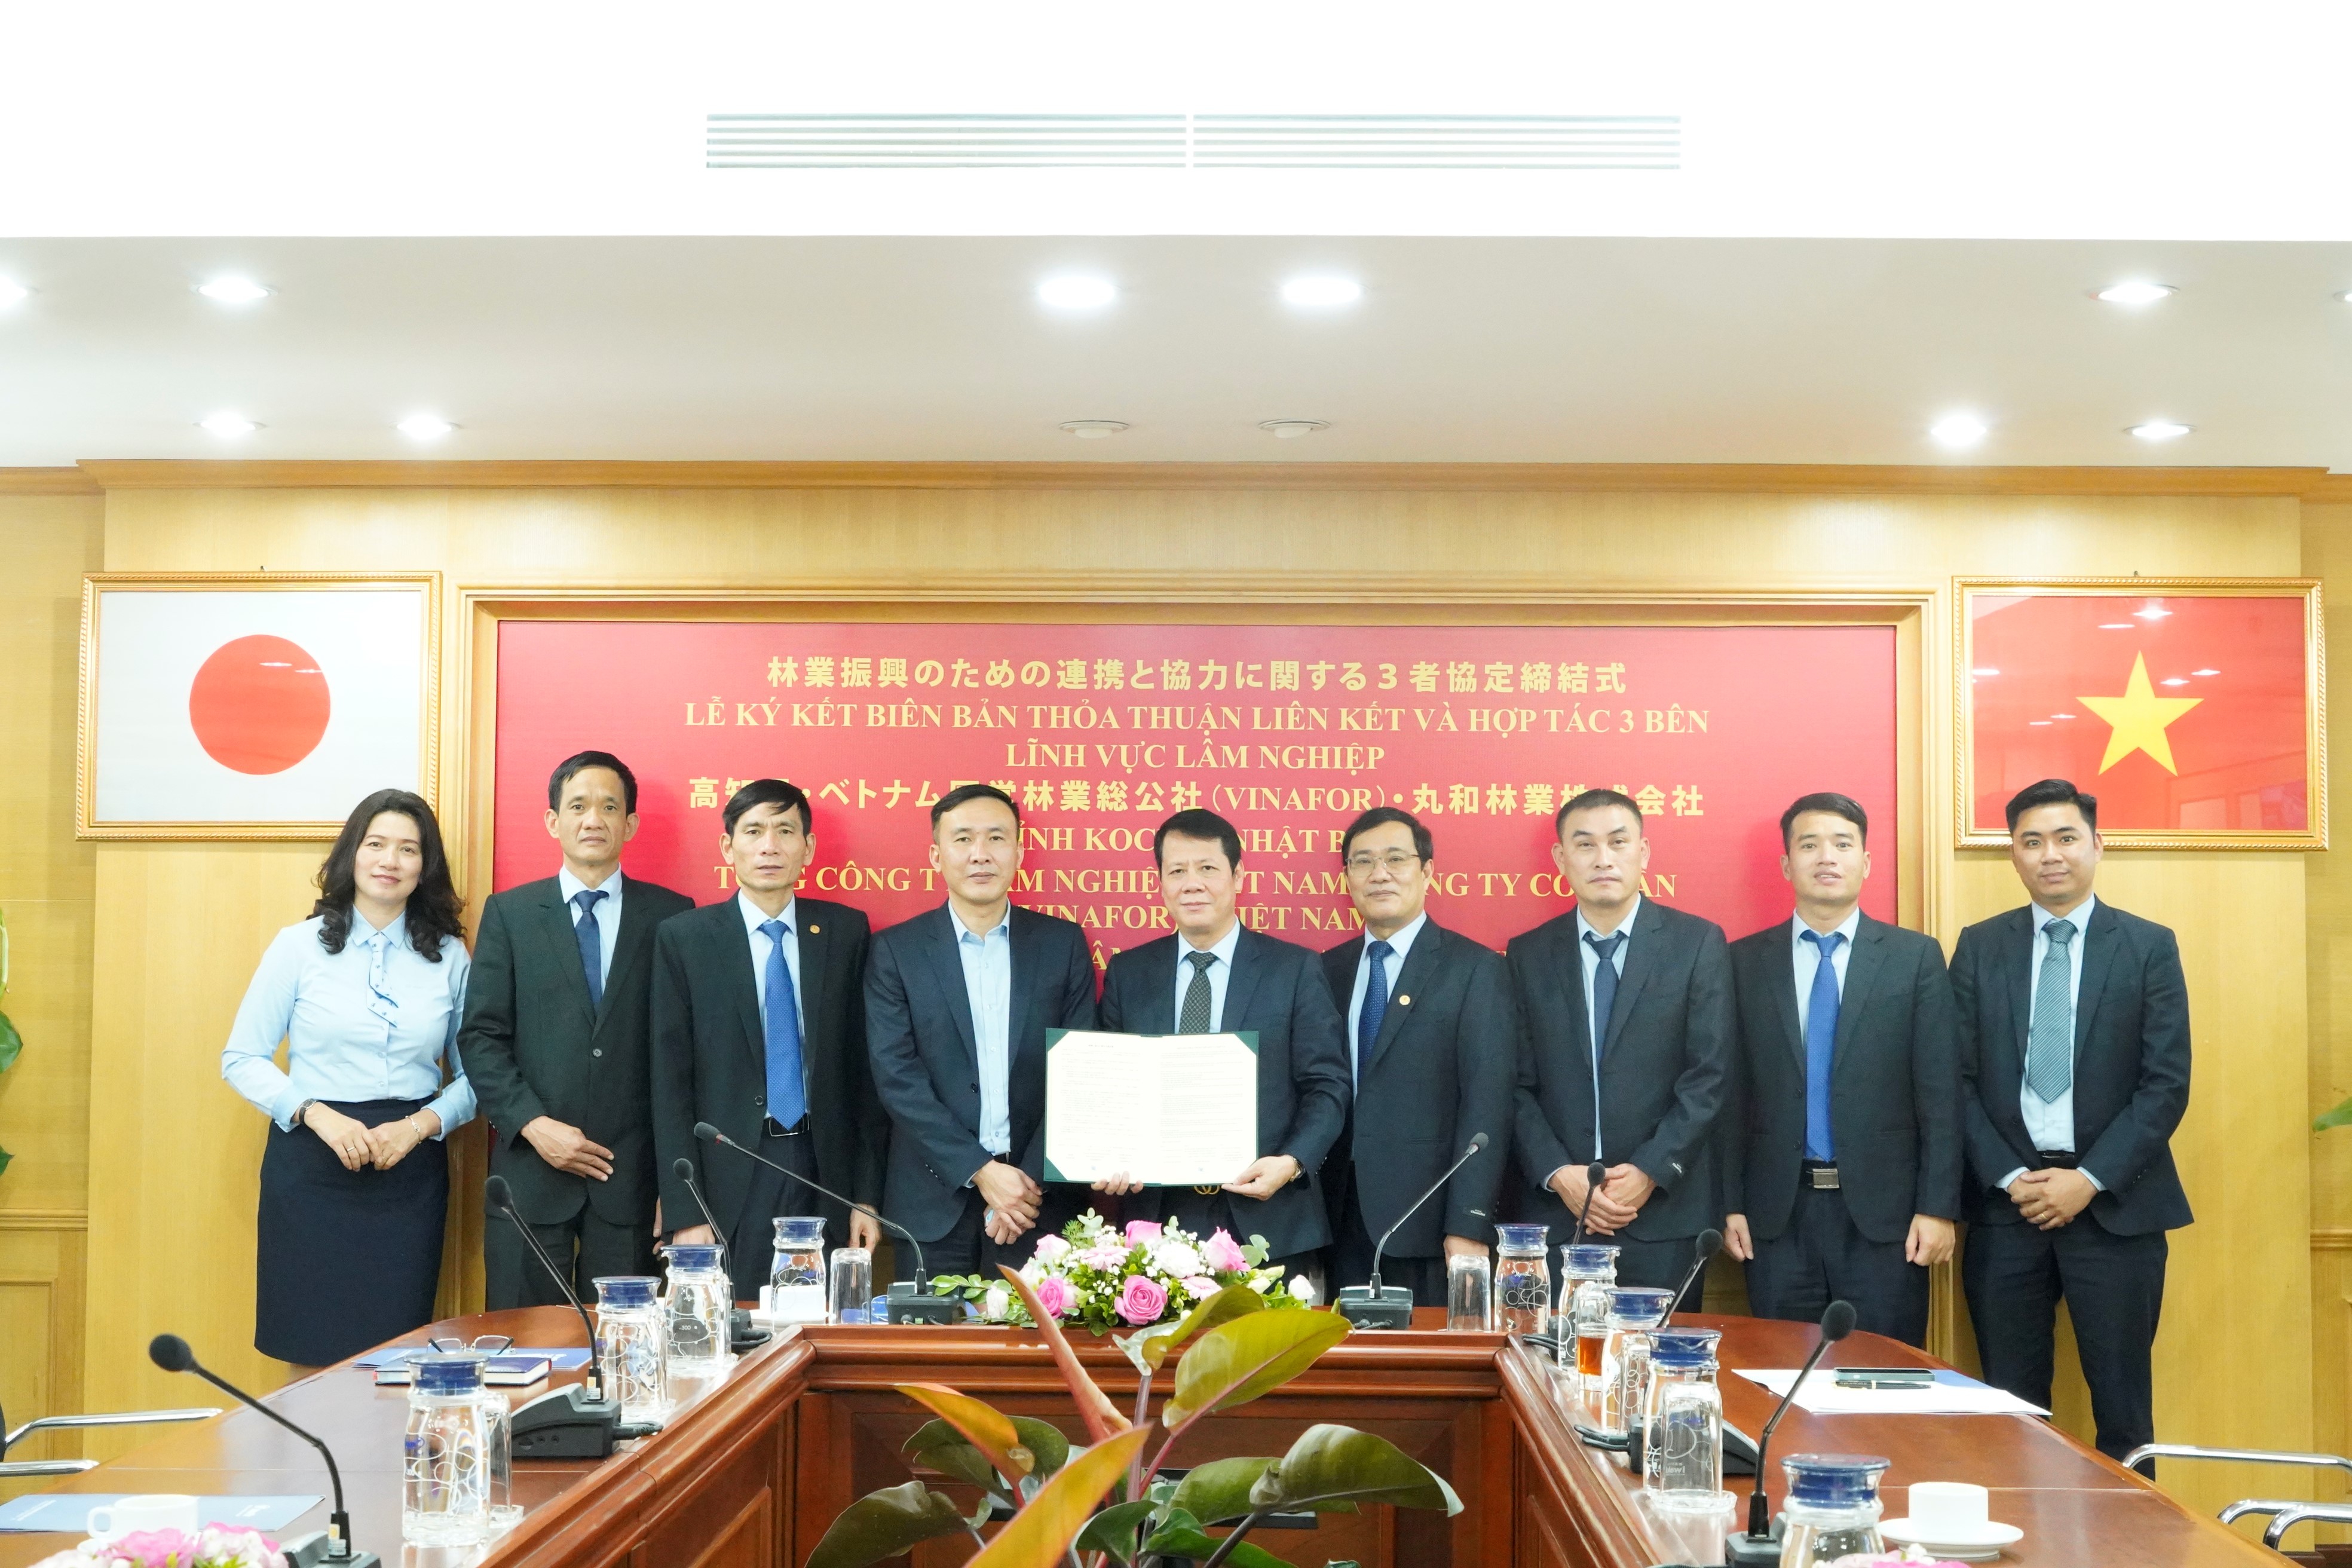 Lễ ký kết Biên bản thỏa thuận liên kết và hợp tác 3 bên lĩnh vực lâm nghiệp giữa Vinafor (Việt Nam) - Tỉnh Kochi (Nhật Bản) - Maruwa (Nhật Bản)